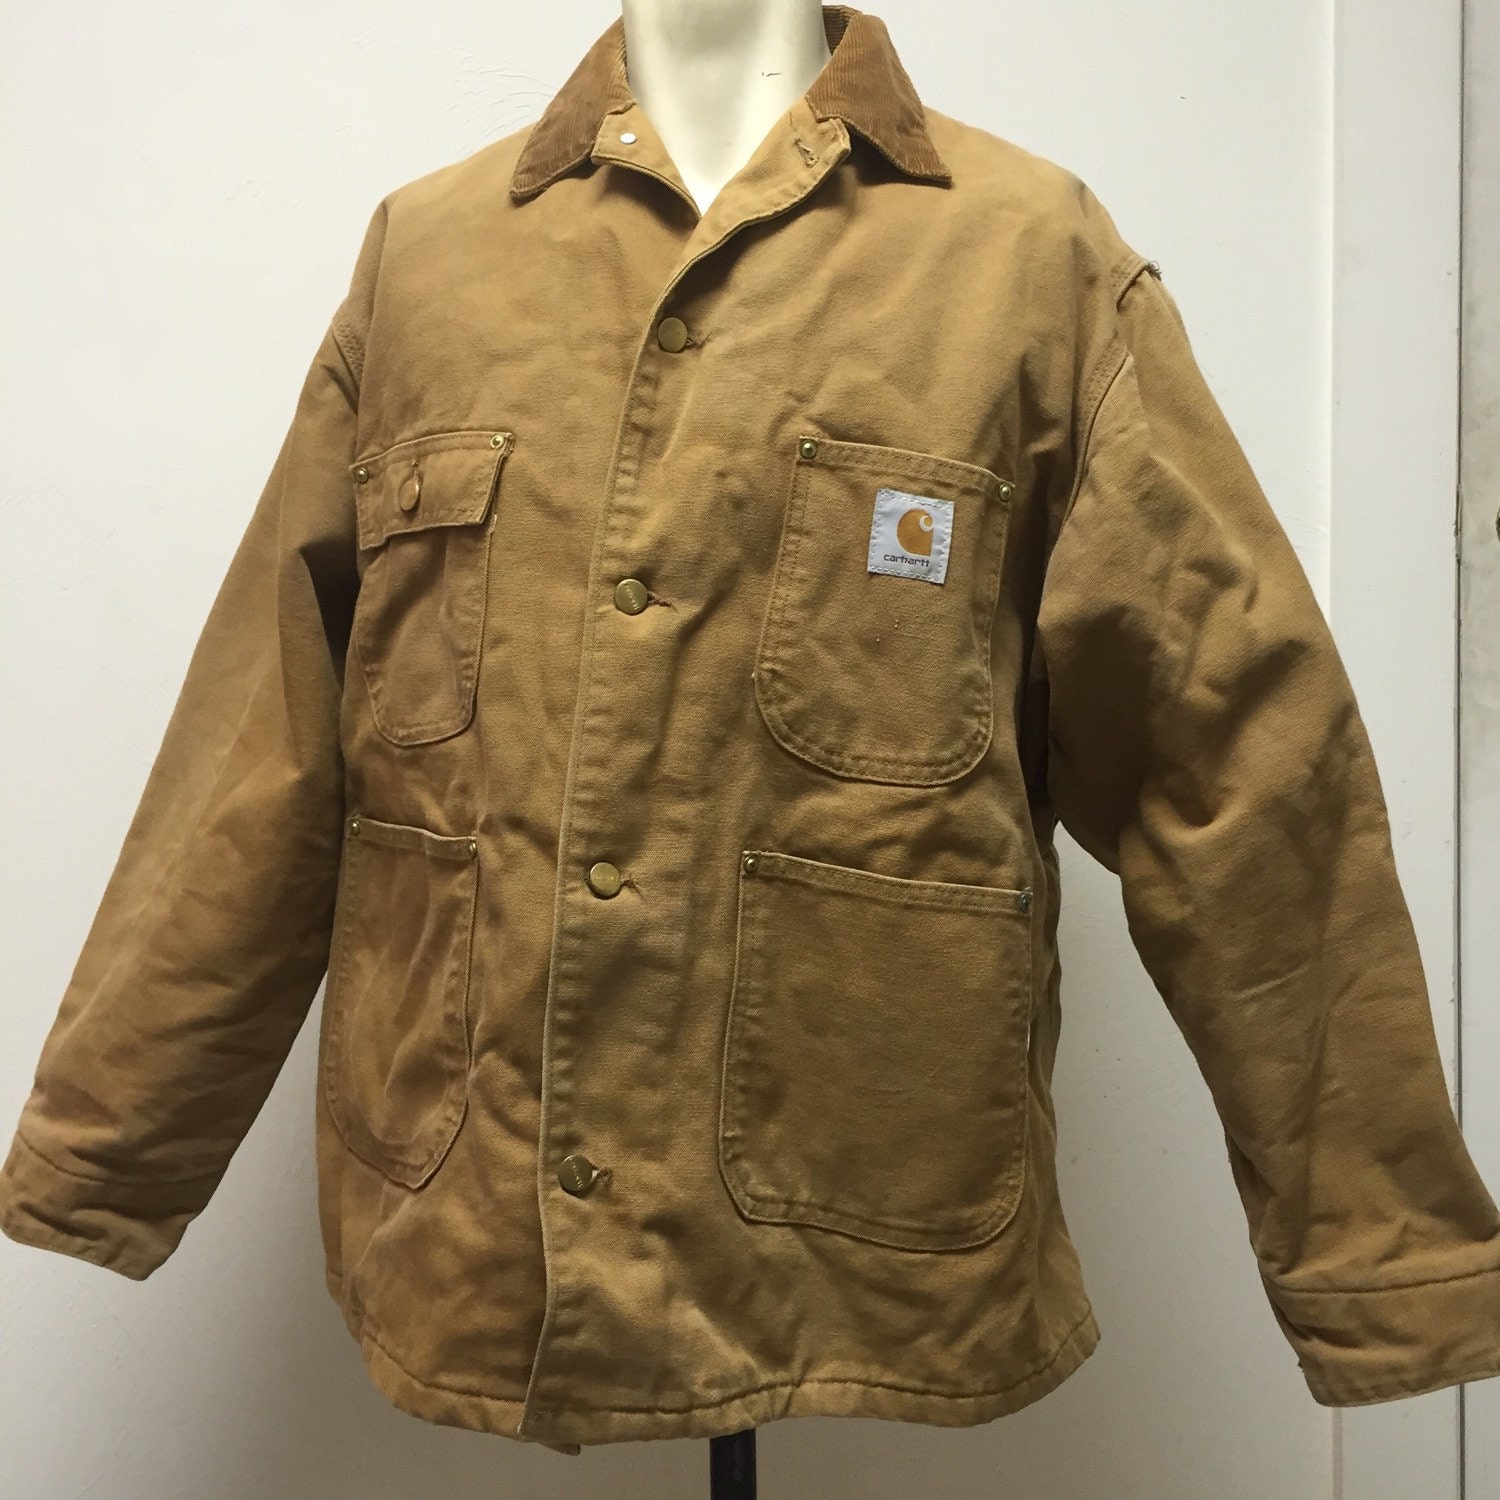 VTG L / M made in USA Carhartt duck jacket barn coat chore